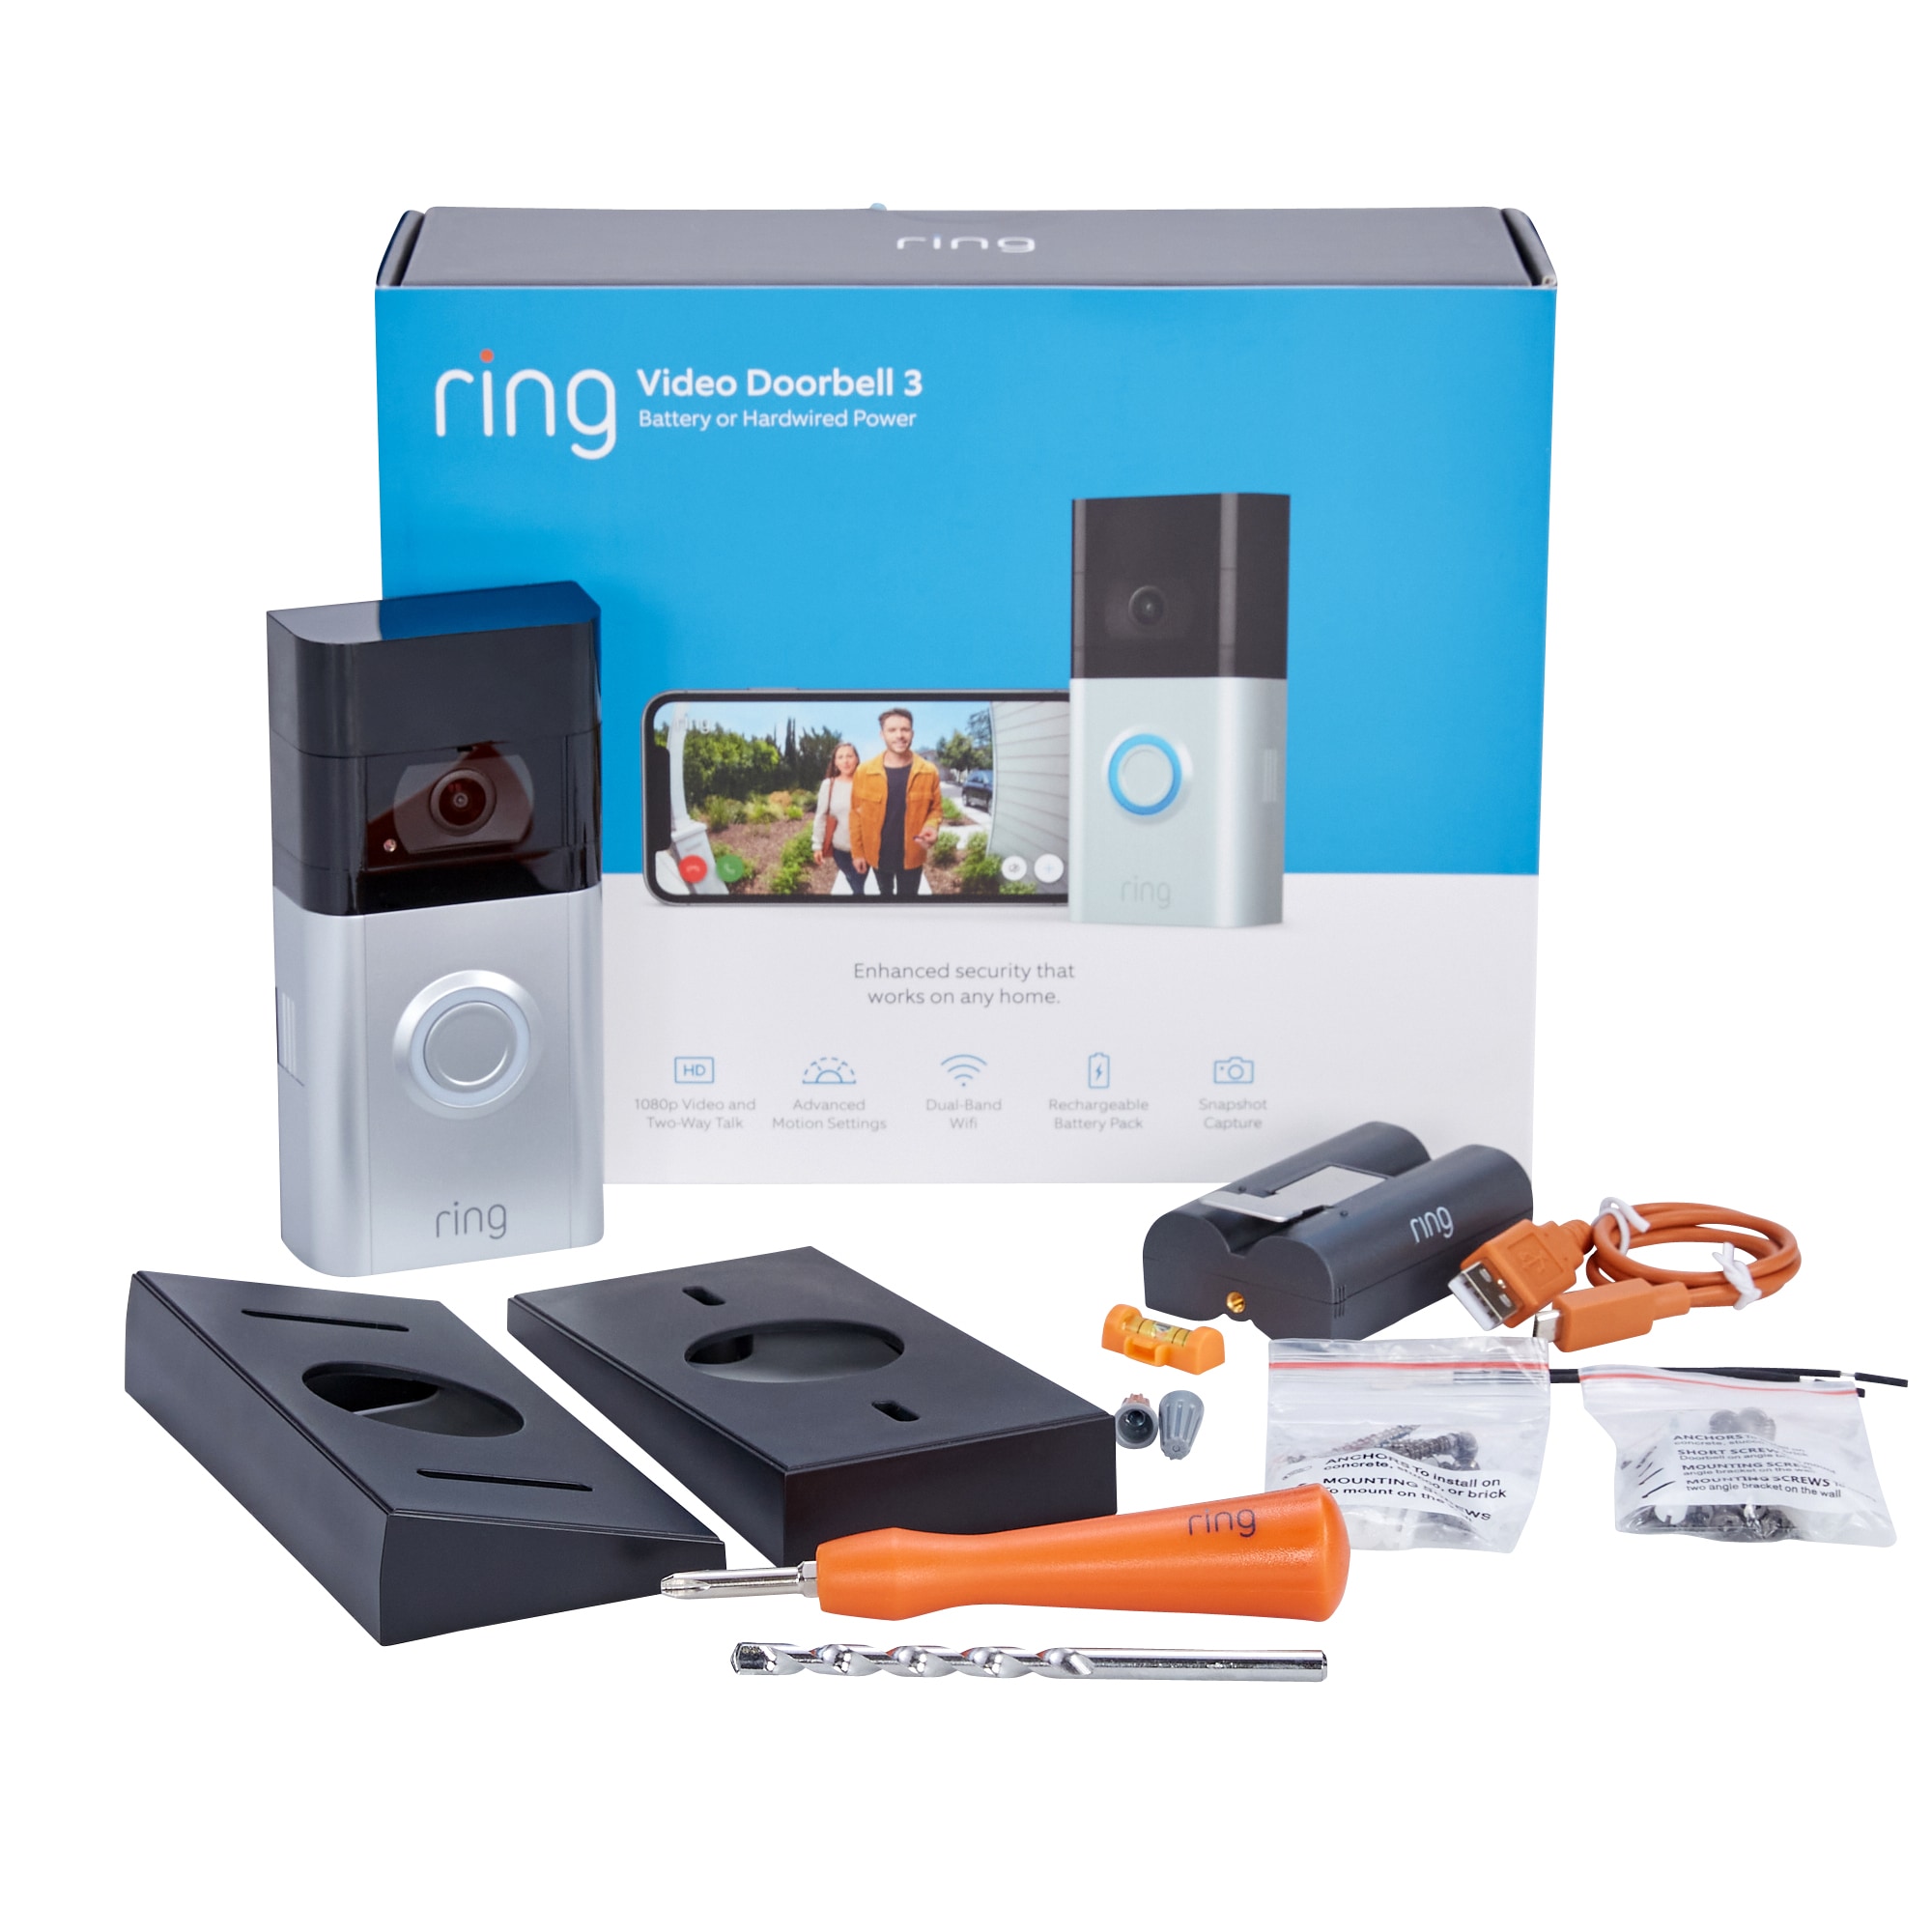 Ring Video Doorbell 3 Battery or Hardwired Power 1080p HD 8VRSLZ-0EN0 Brand New 